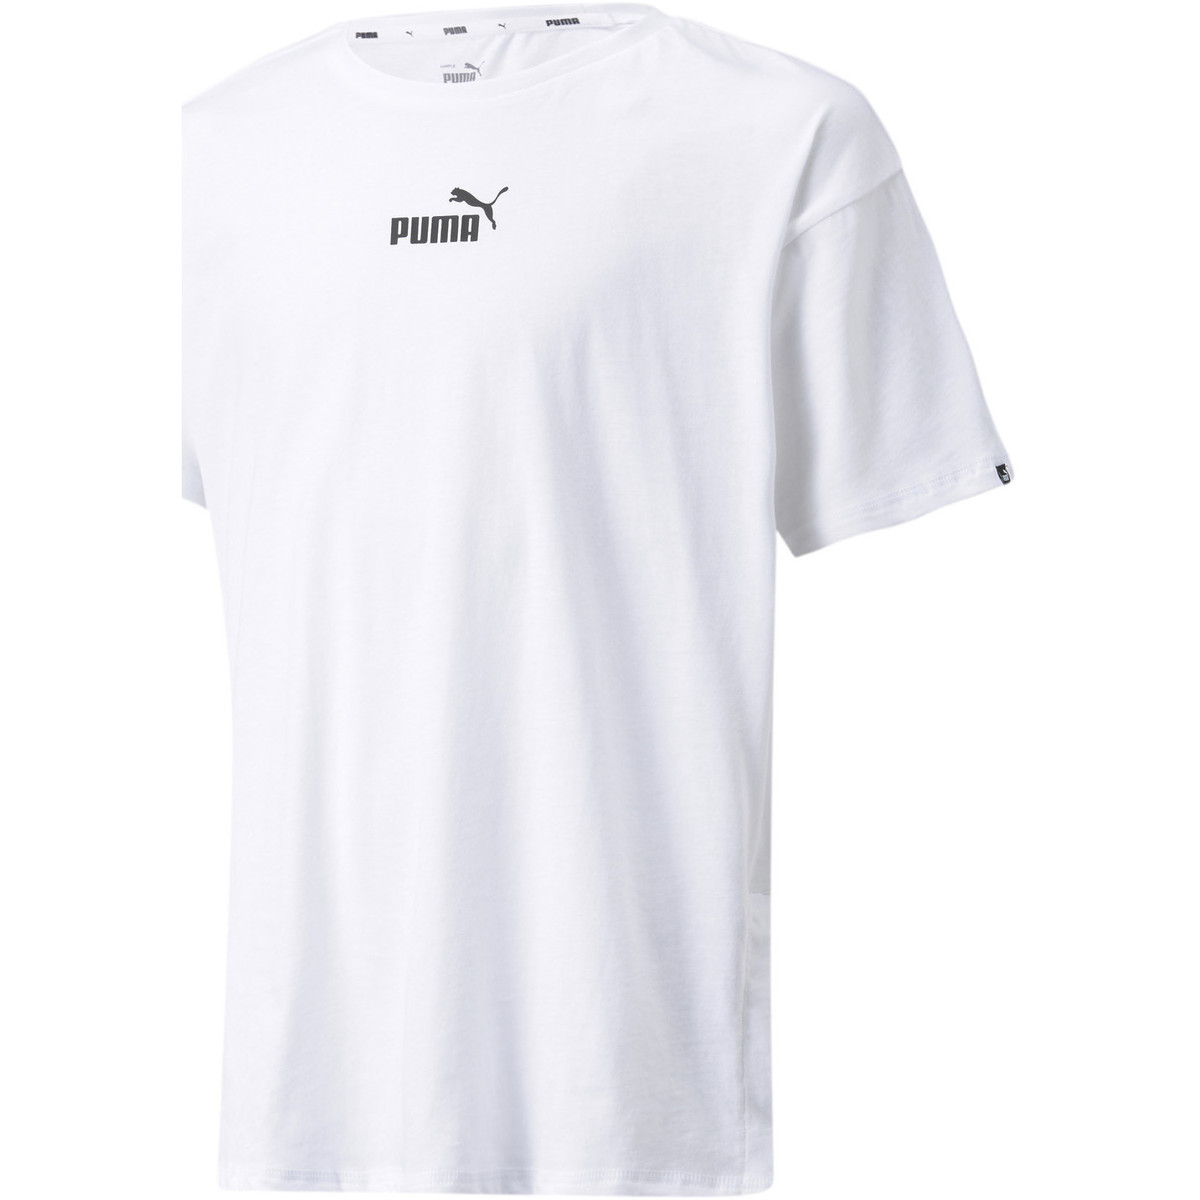 Vêtements Fille Dann stöbere doch ganz bequem in unserer Auswahl an PUMA Sneakern T-shirt Power Blanc